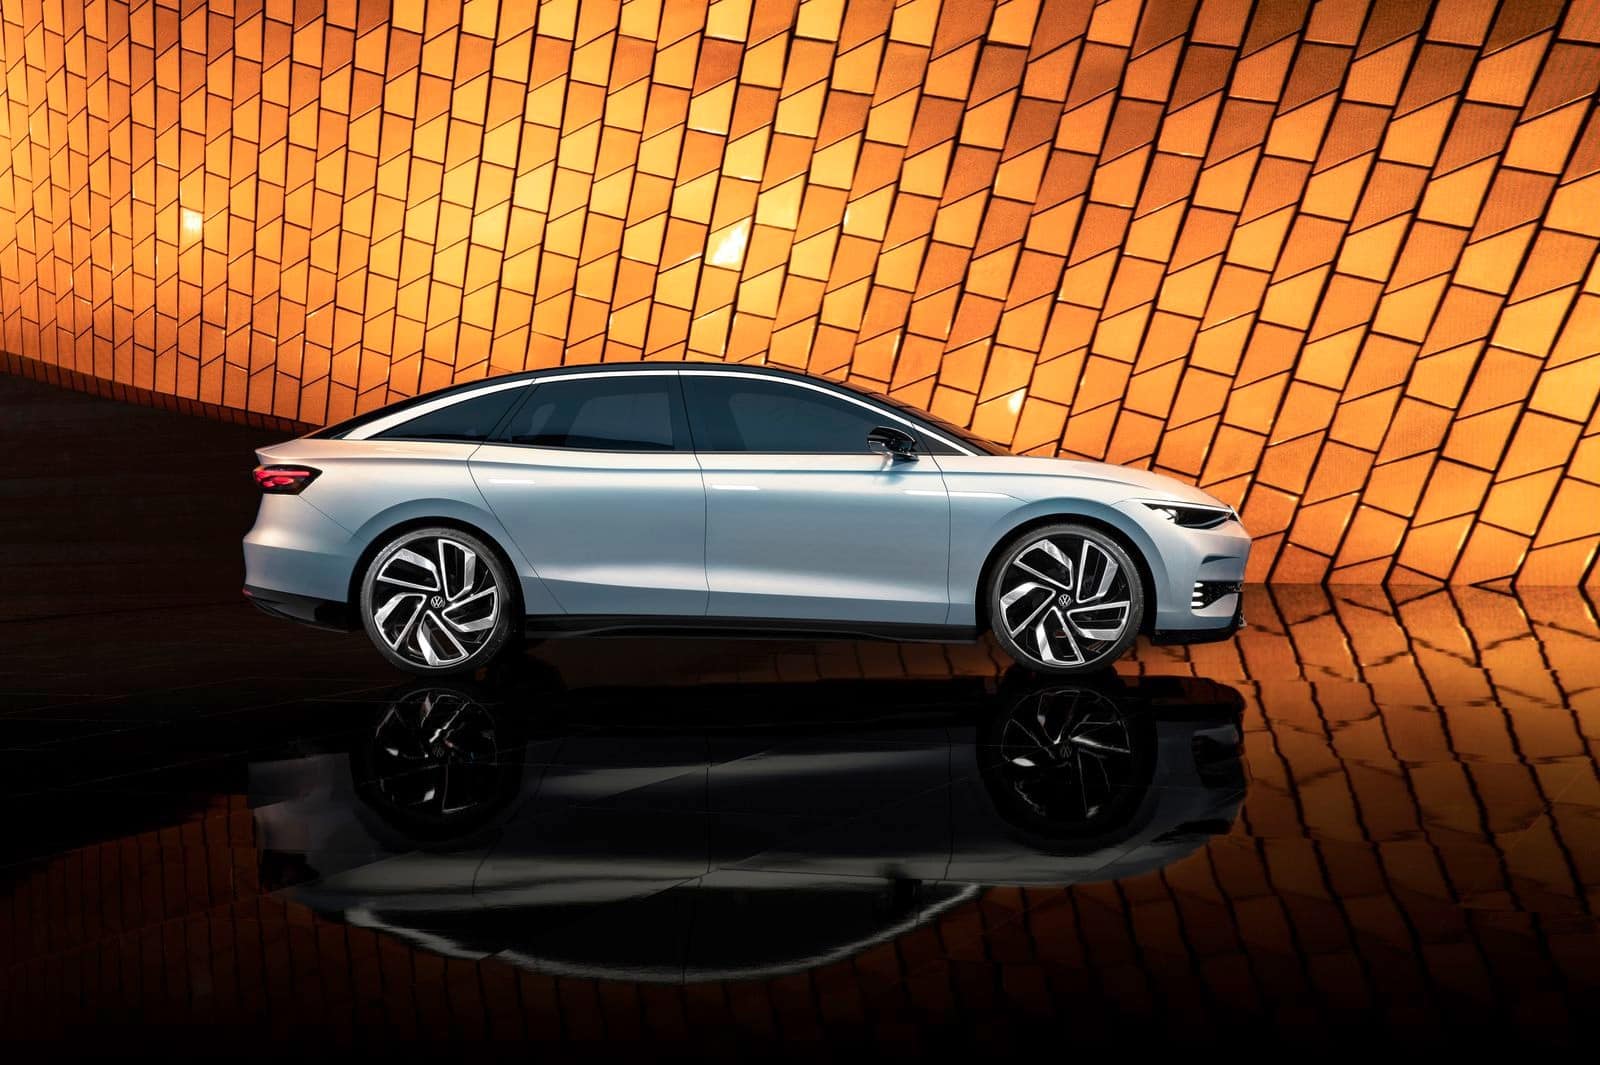 VW ID Aero elektrikli sedan konsept otomobilini tanıttı